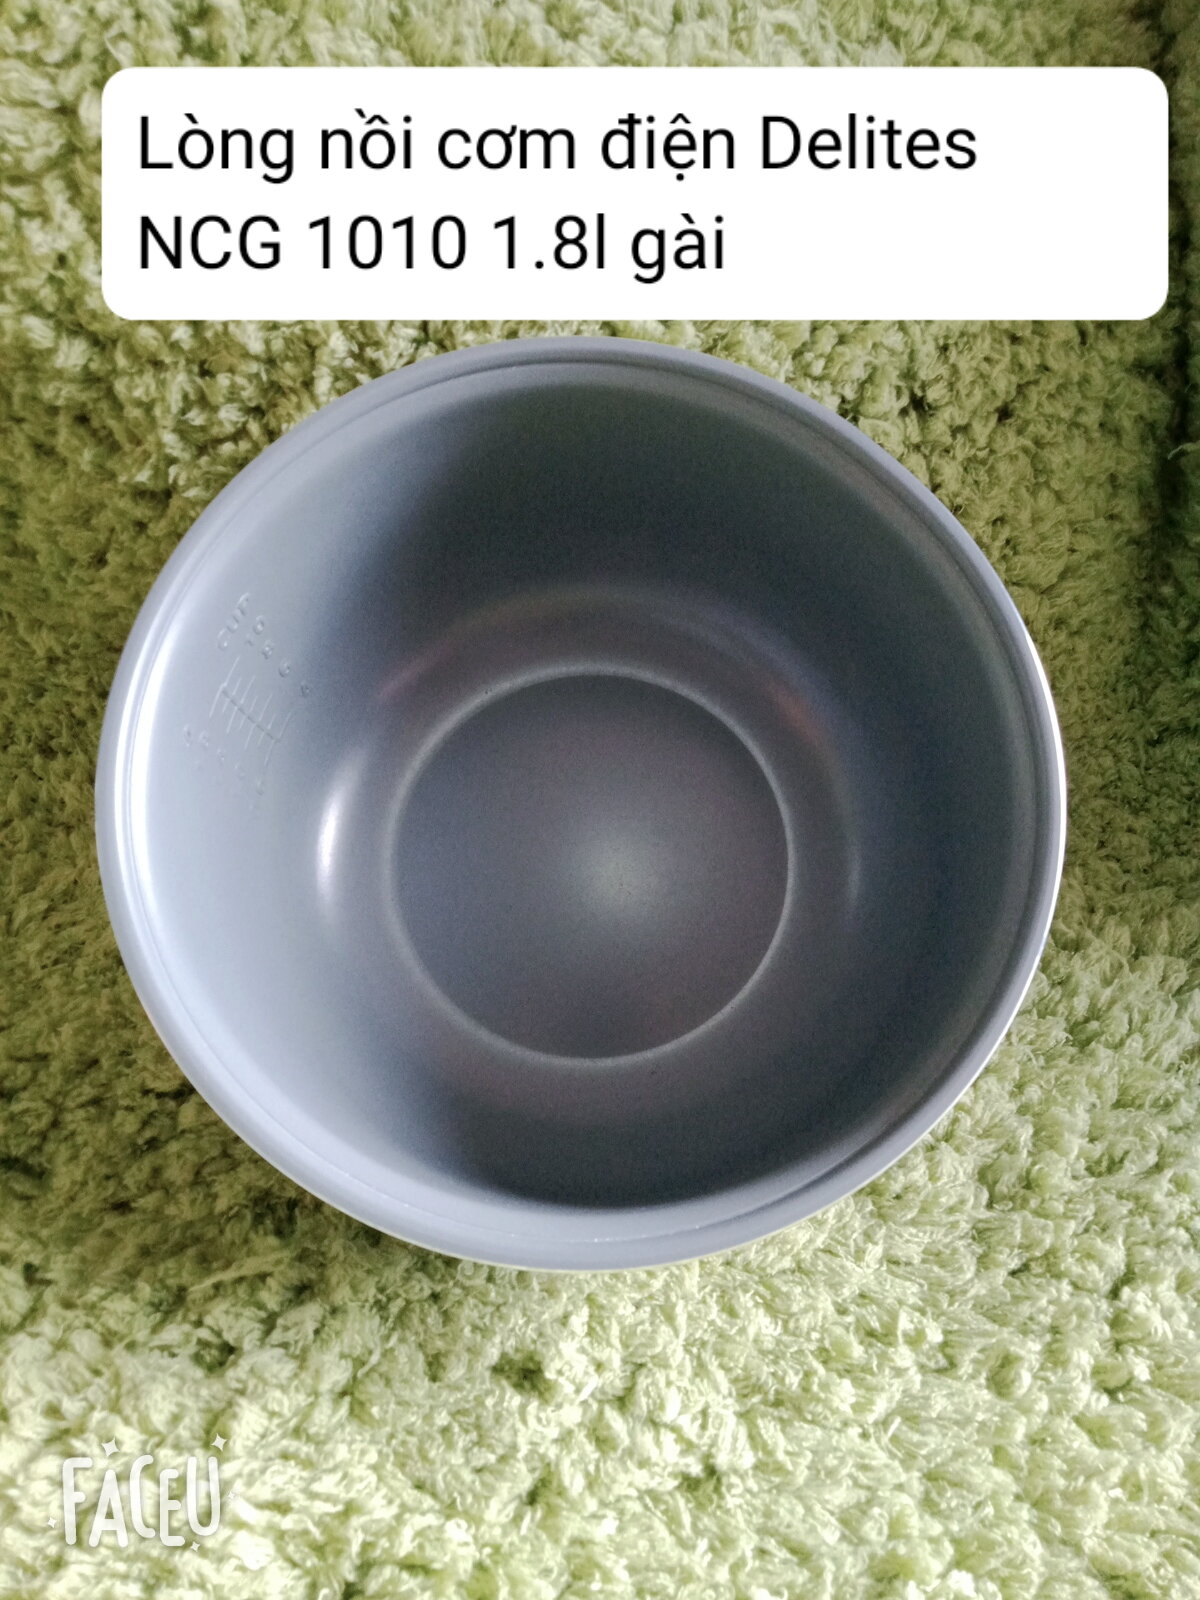 Lòng nồi cơm điện Delites NCG 1010 1.8l nắp gài-phụ kiện phụ tùng linh kiện chính hãng